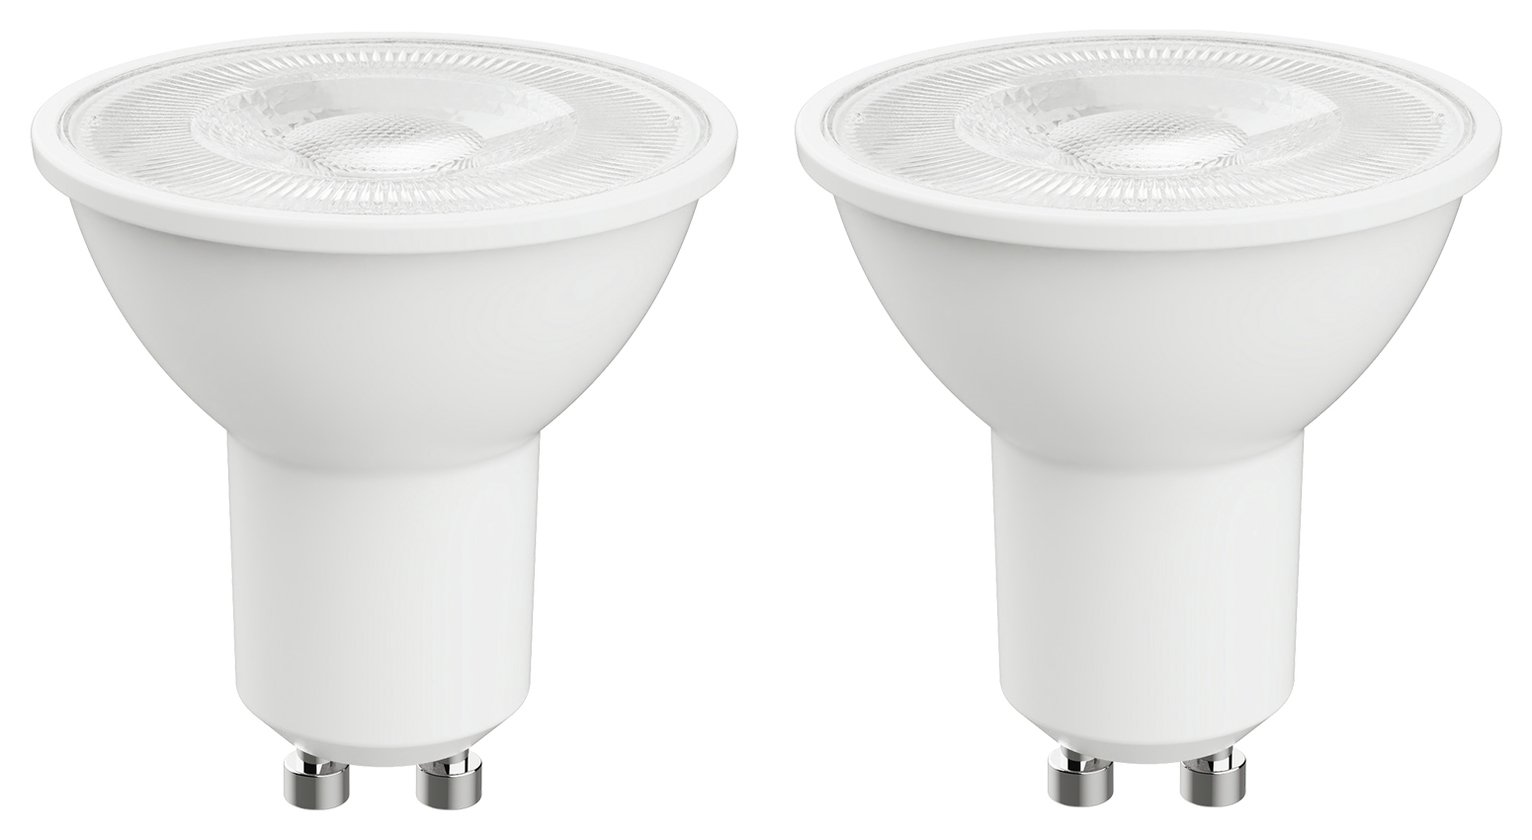 Argos Home 3.4W LED GU10 Light Bulb - 2 Pack